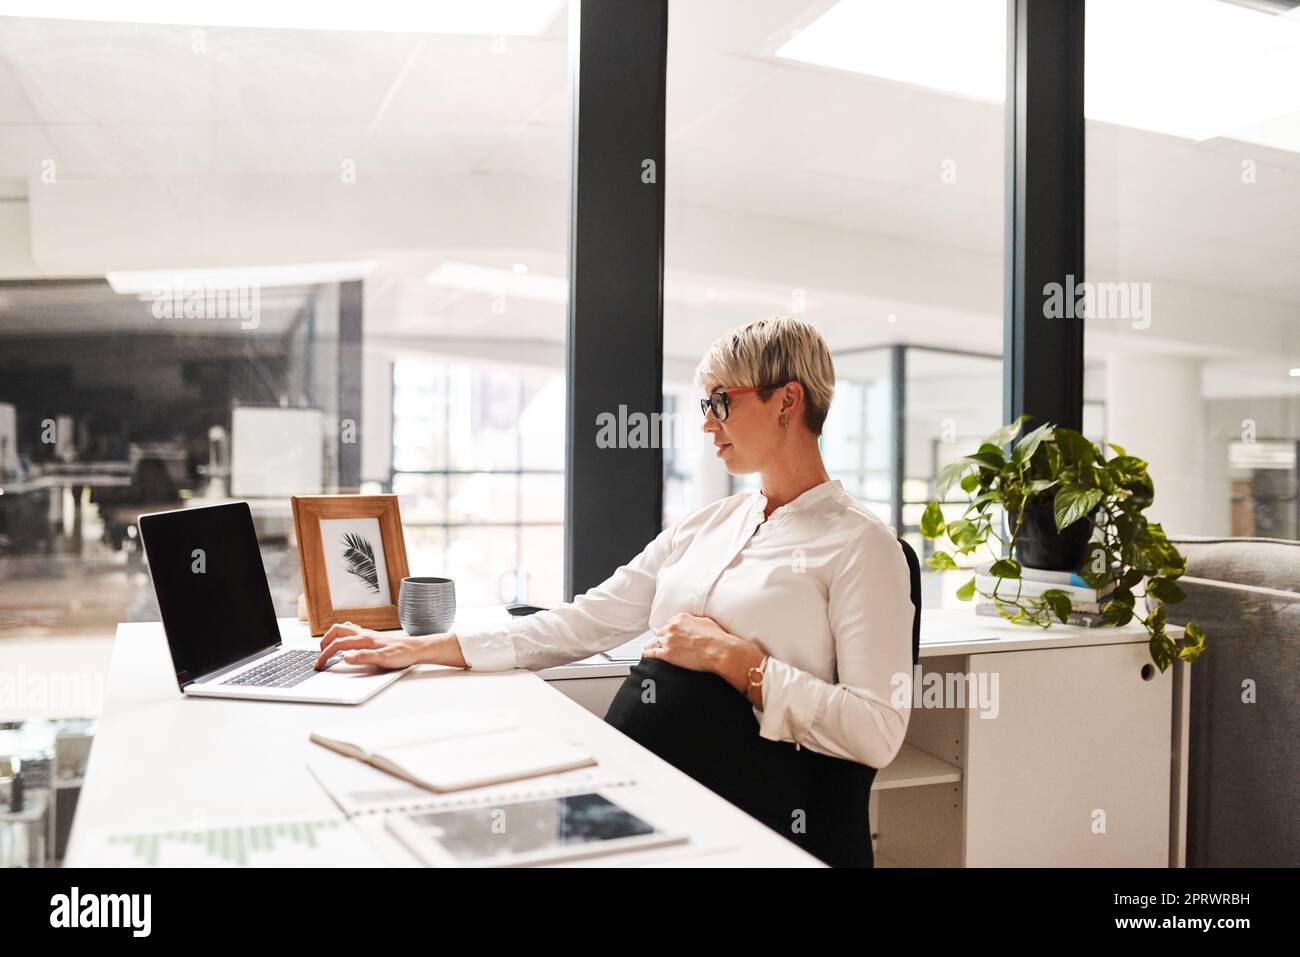 Elle prépare de grands projets pour l'avenir de son entreprise et de sa carrière. Une femme d'affaires enceinte travaillant sur un ordinateur portable dans un bureau. Banque D'Images